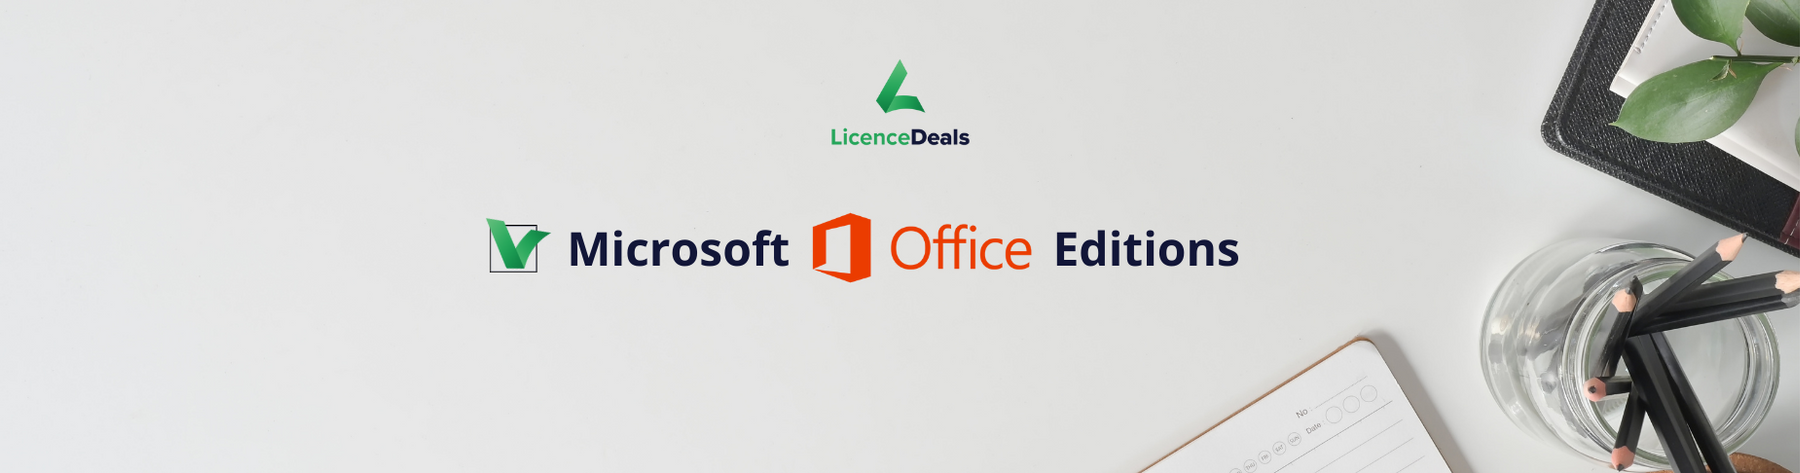 Microsoft Office Editions Comparison